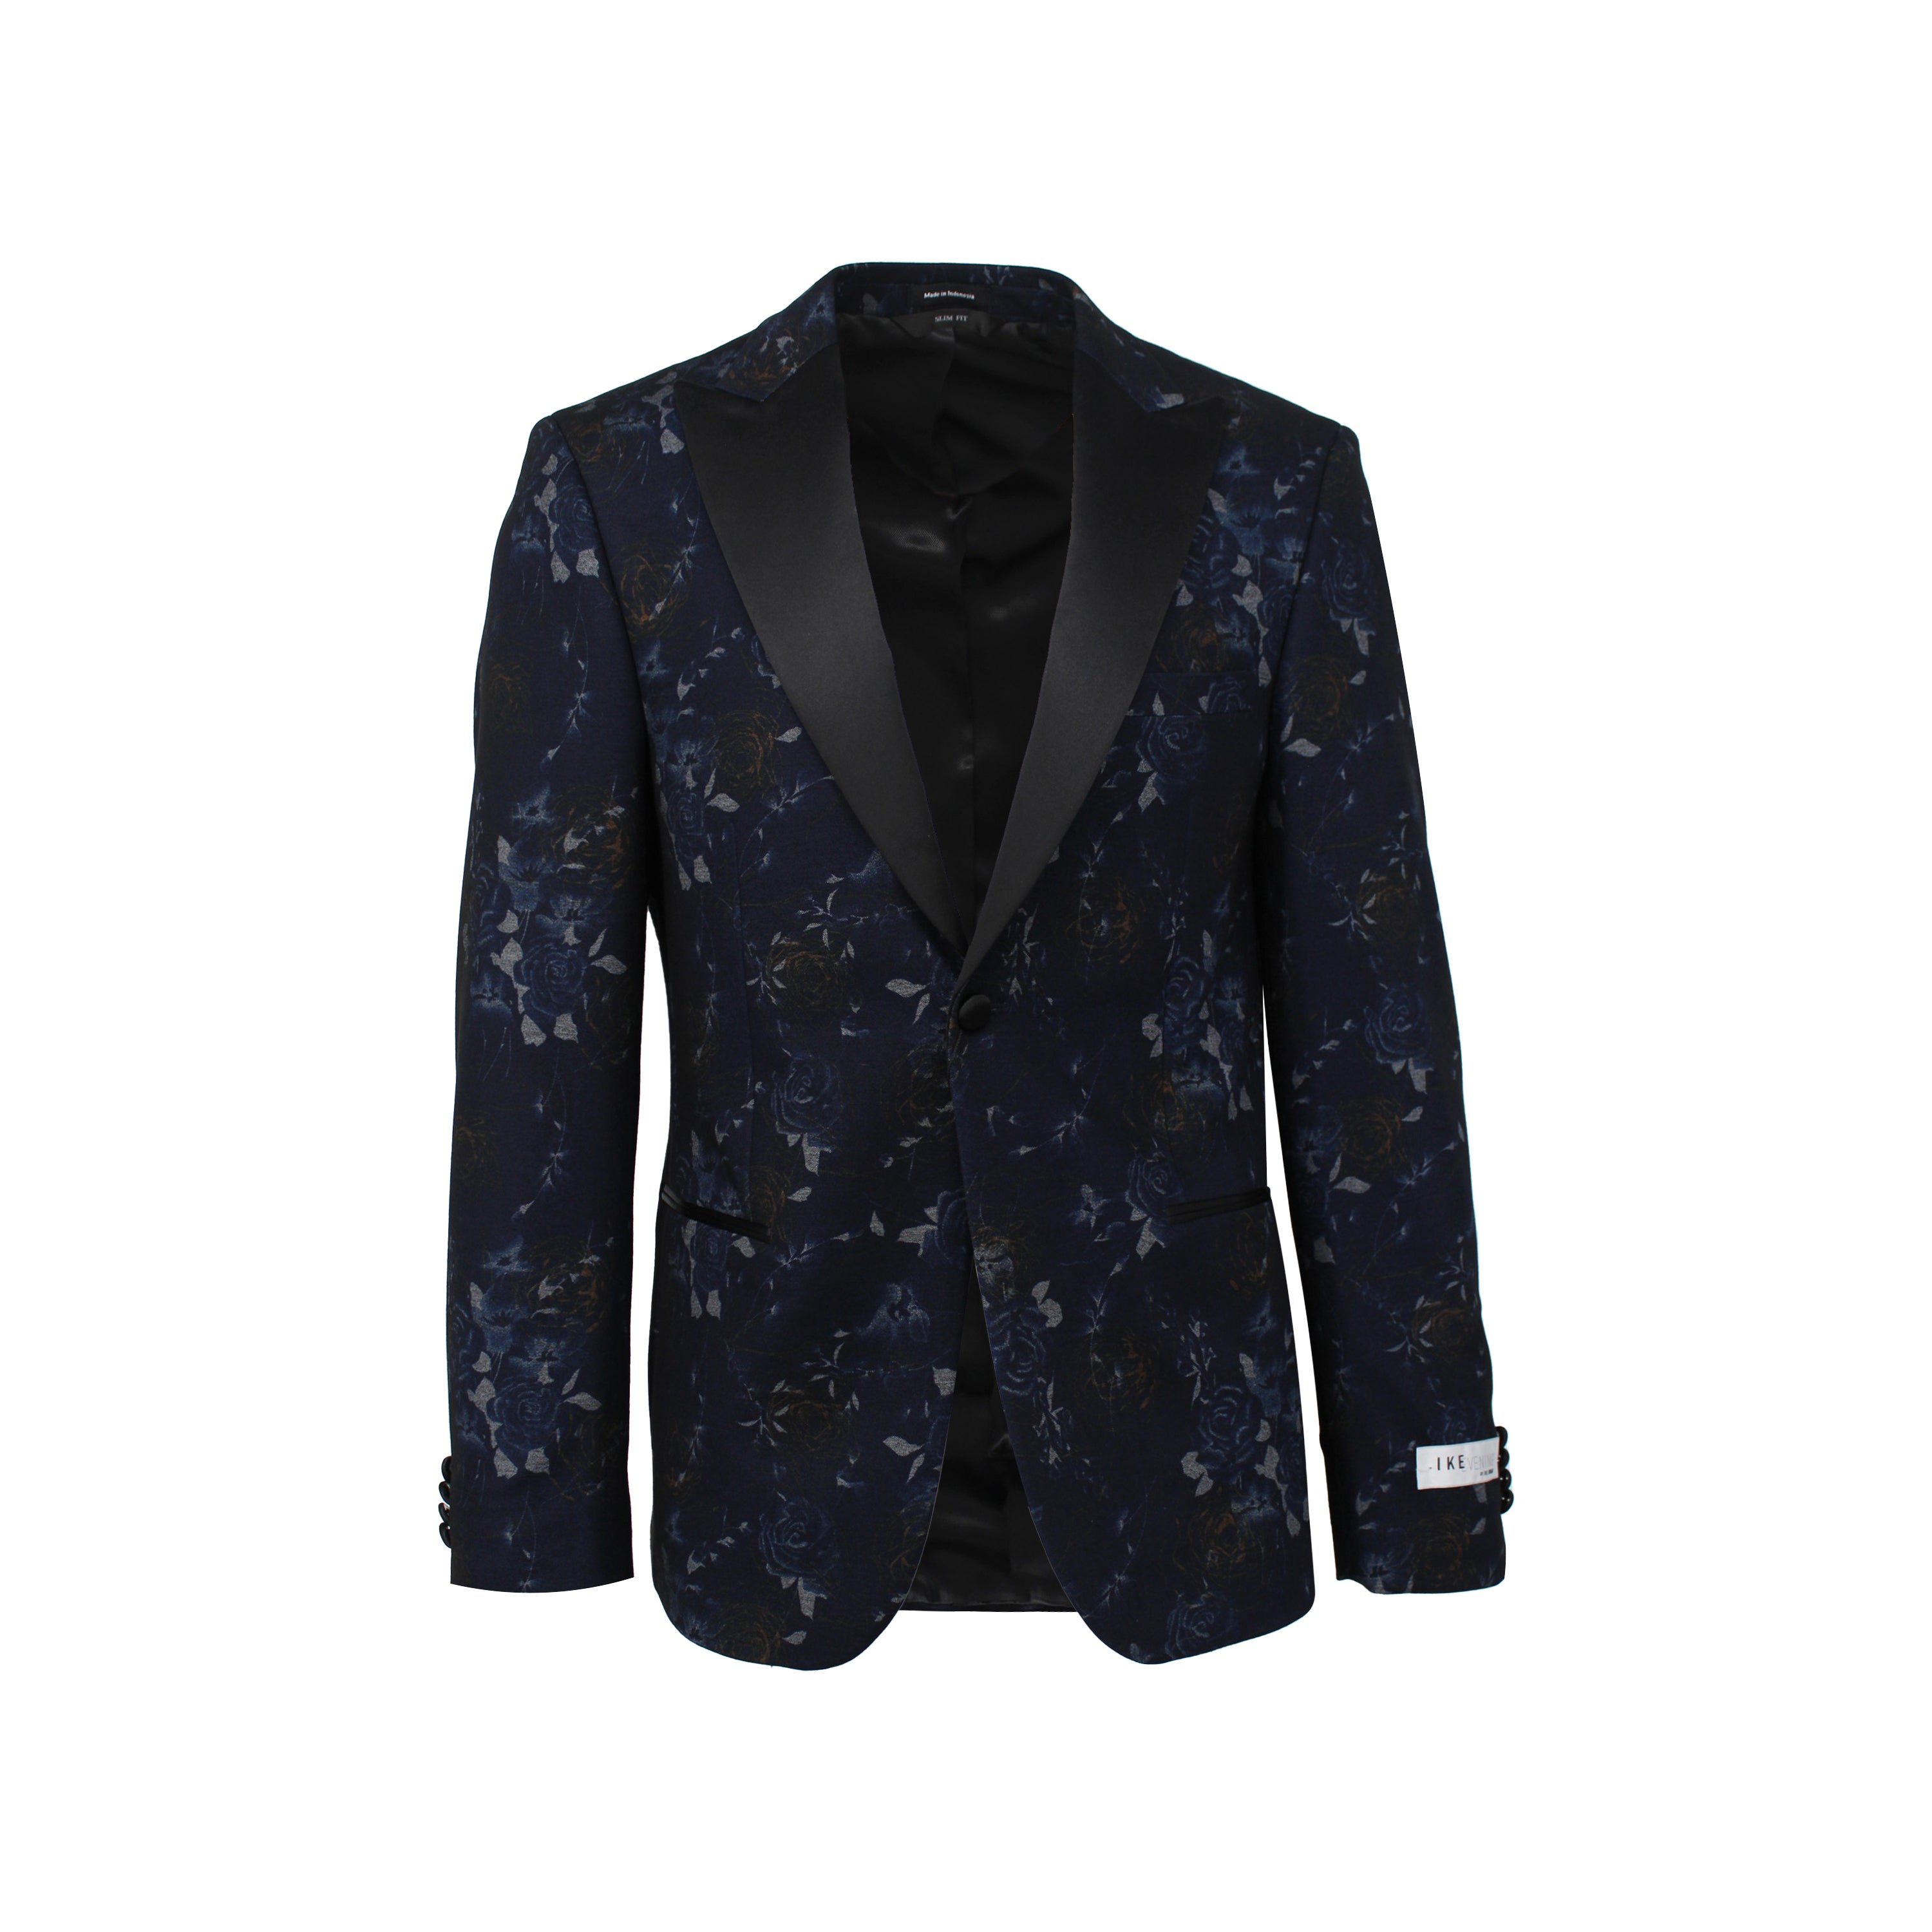 Velvet tuxedo jacket Slim Fit - Dark turquoise - Men | H&M IN